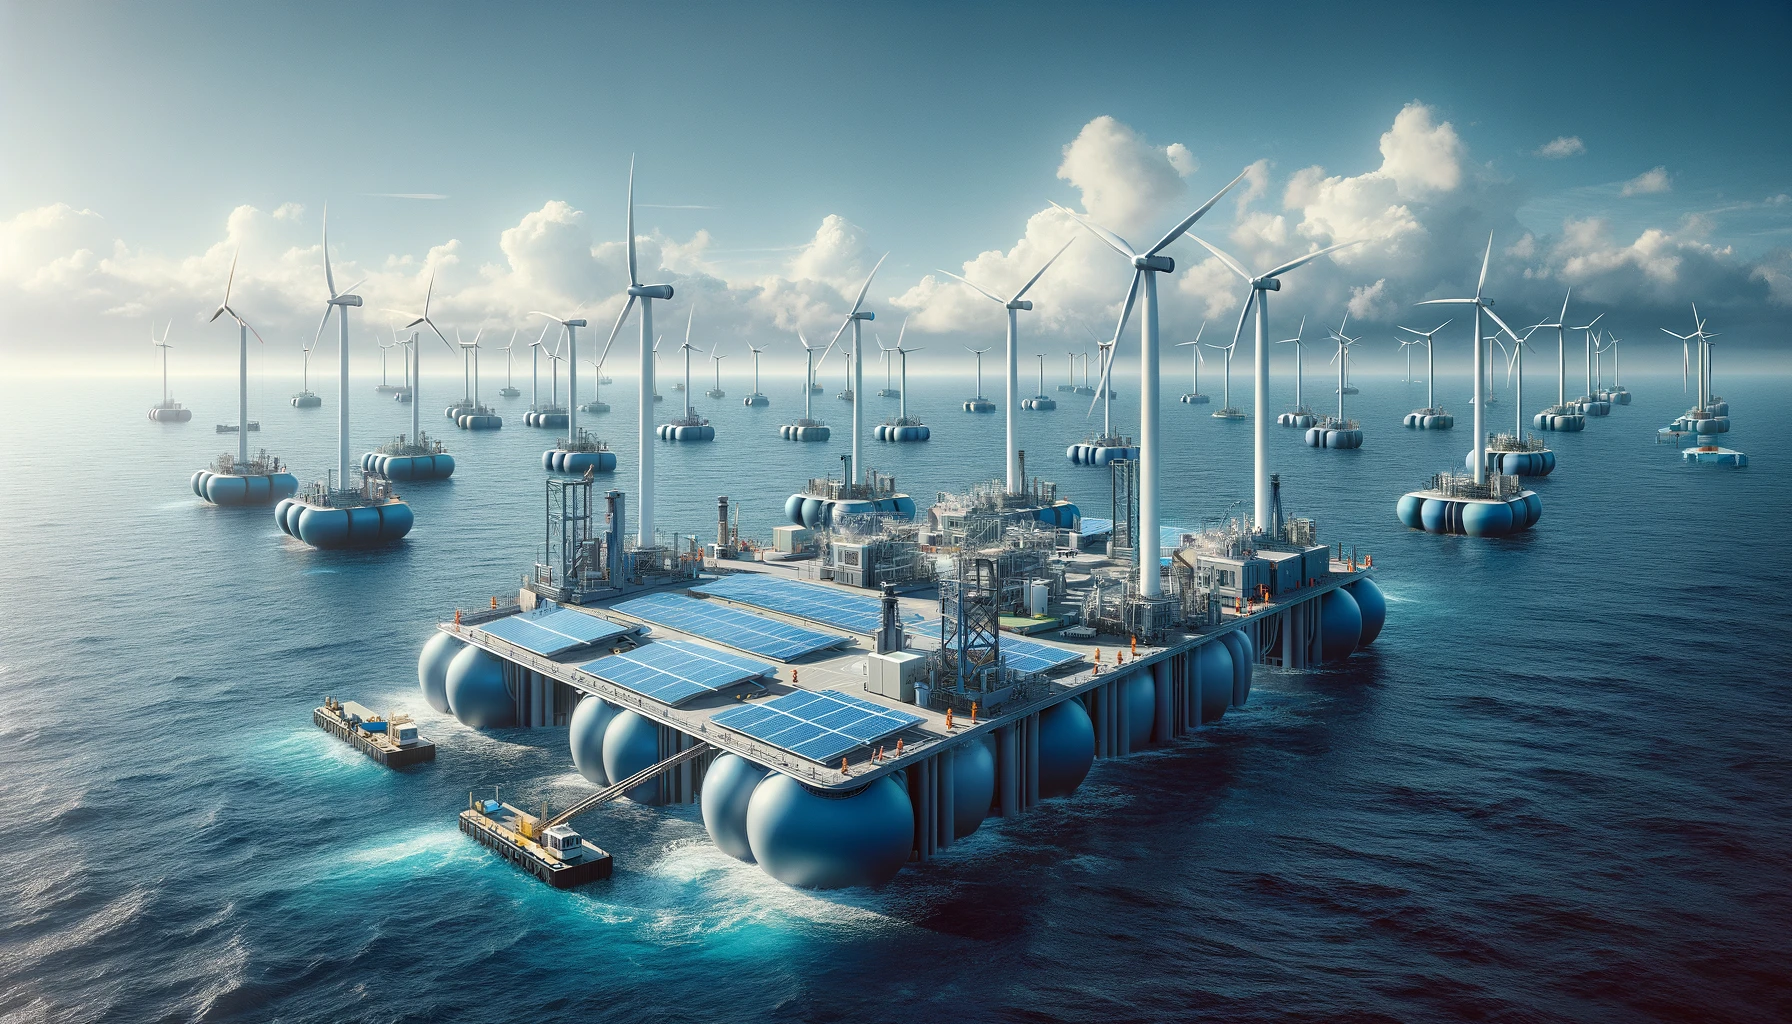 Sistem Energi Terapung: Infrastruktur Energi Terbarukan di Laut